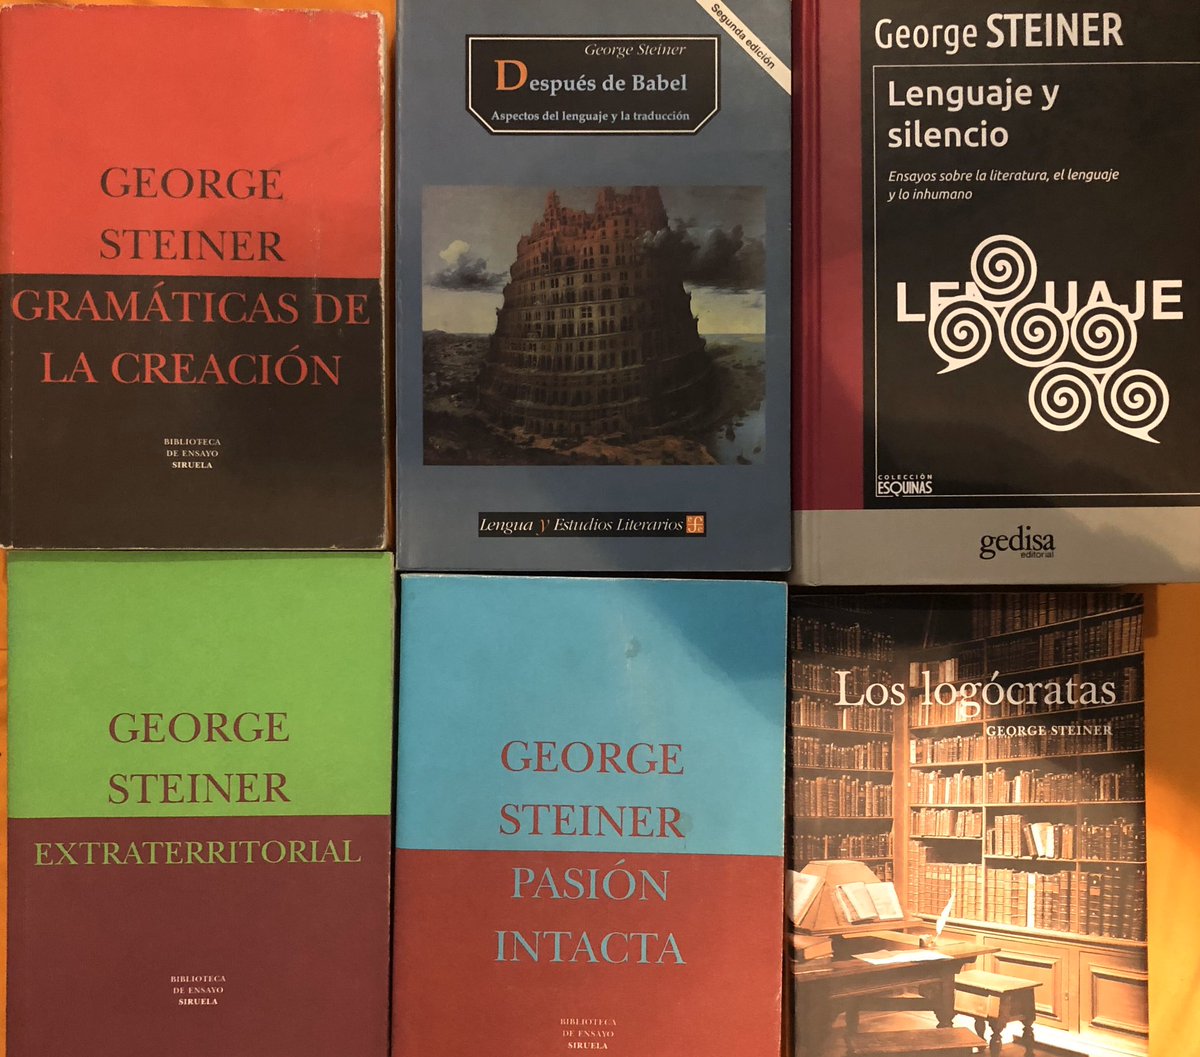 Hace dos días falleció uno de los gigantes del pensamiento contemporáneo: #GeorgeSteiner #Filósofo, #filólogo, #CríticoLiterario Una mente deslumbrante. Léanlo o reléanlo, será de lo mejor que harán en 2020.